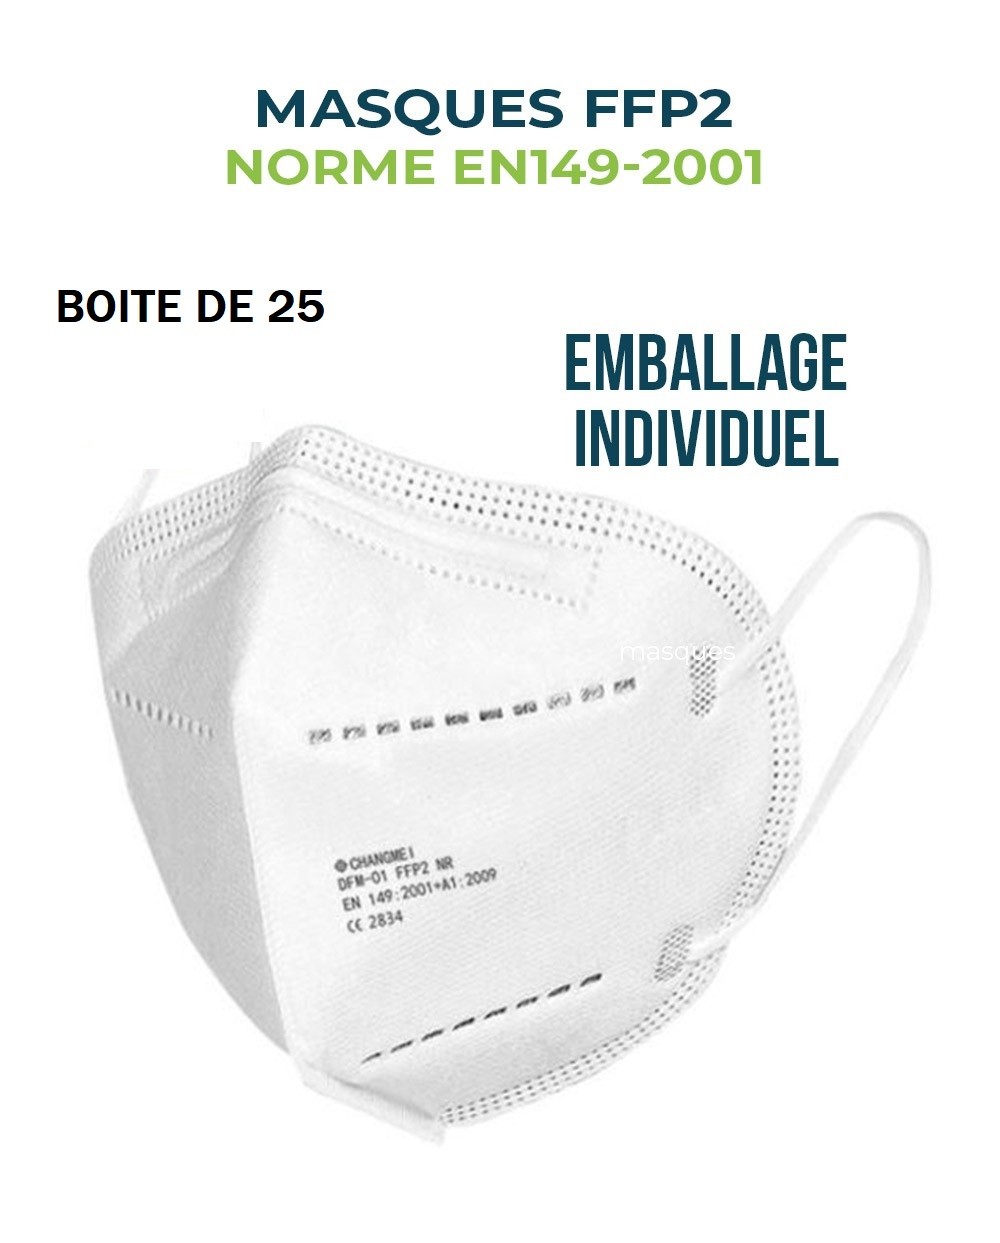 masque-ffp2-emballage-individuel-boite-de-25-pieces